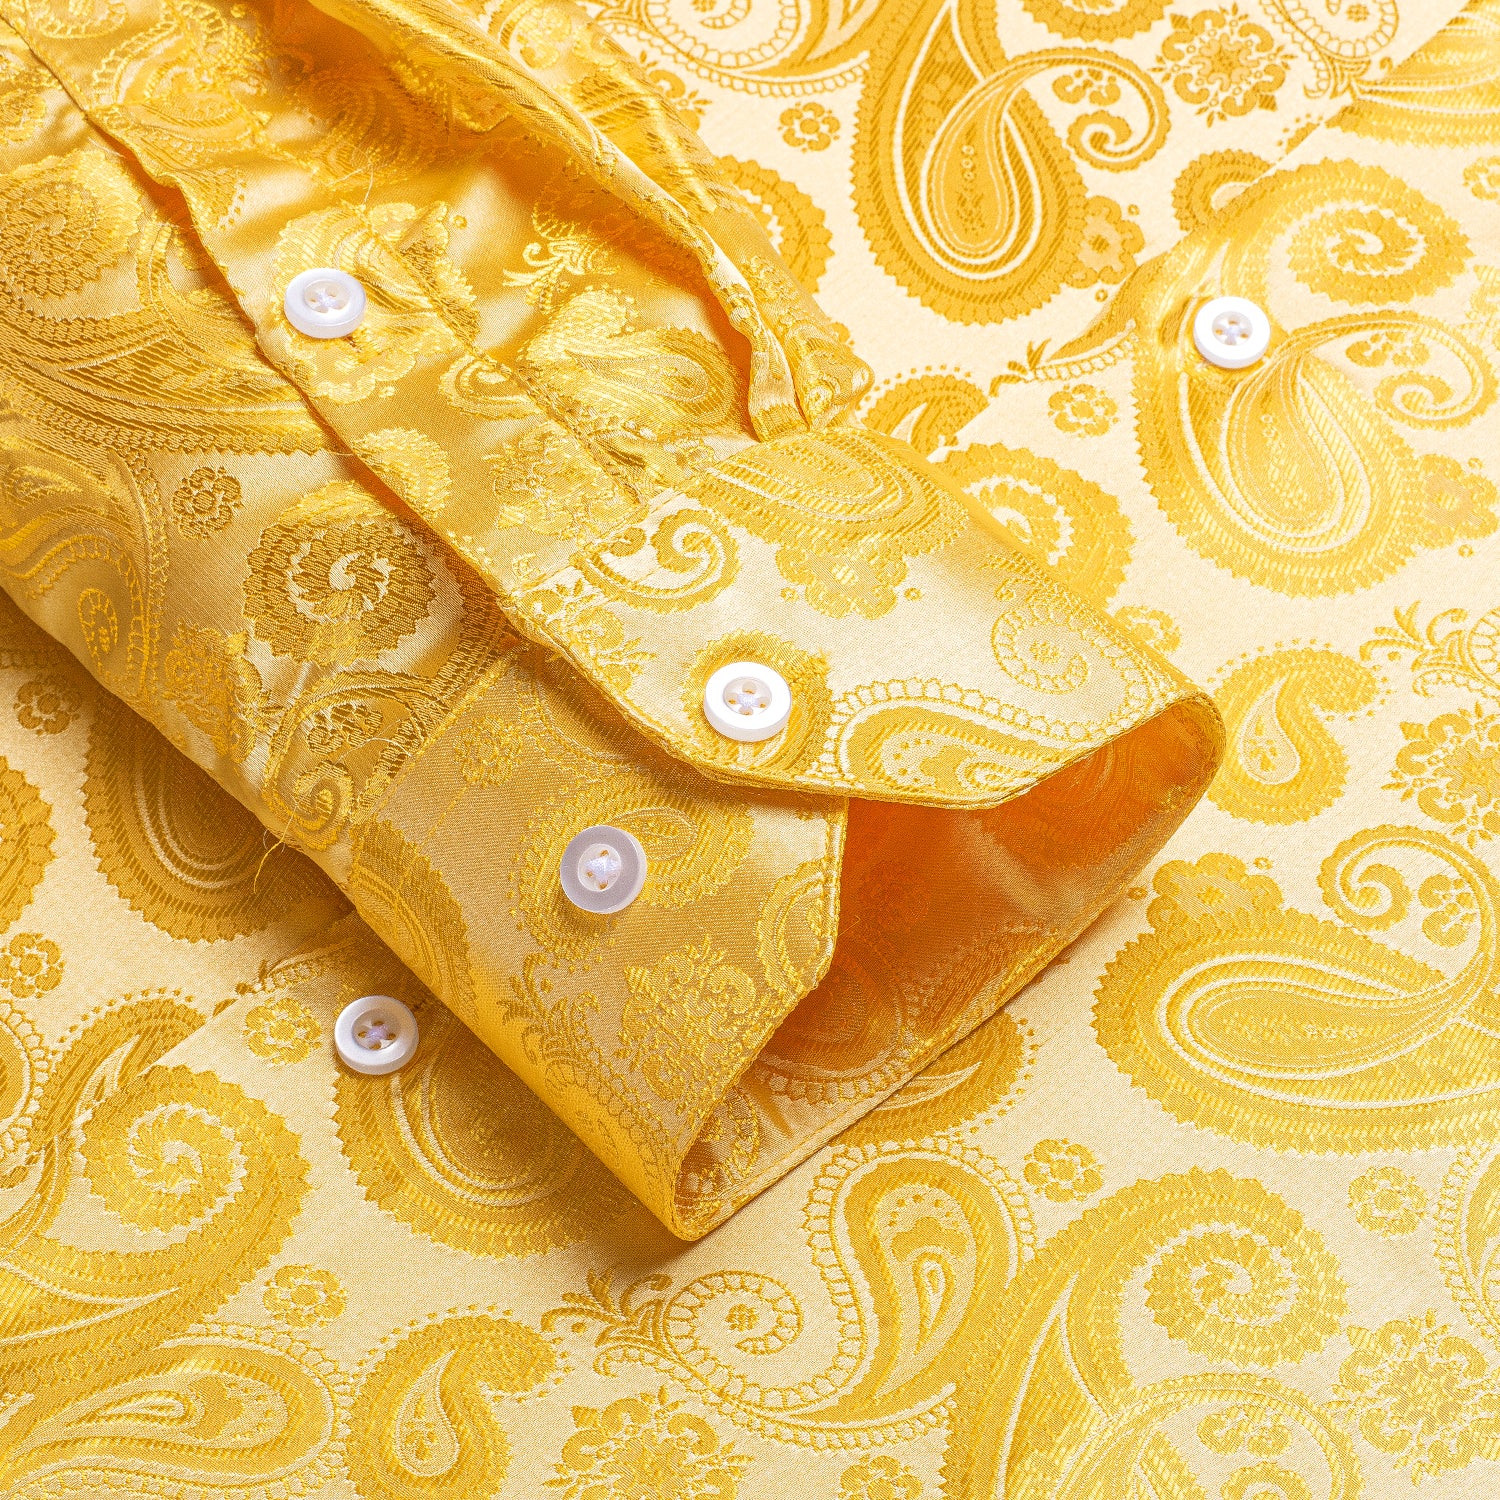 Golden Silver Paisley Silk Men's Long Sleeve Shirt